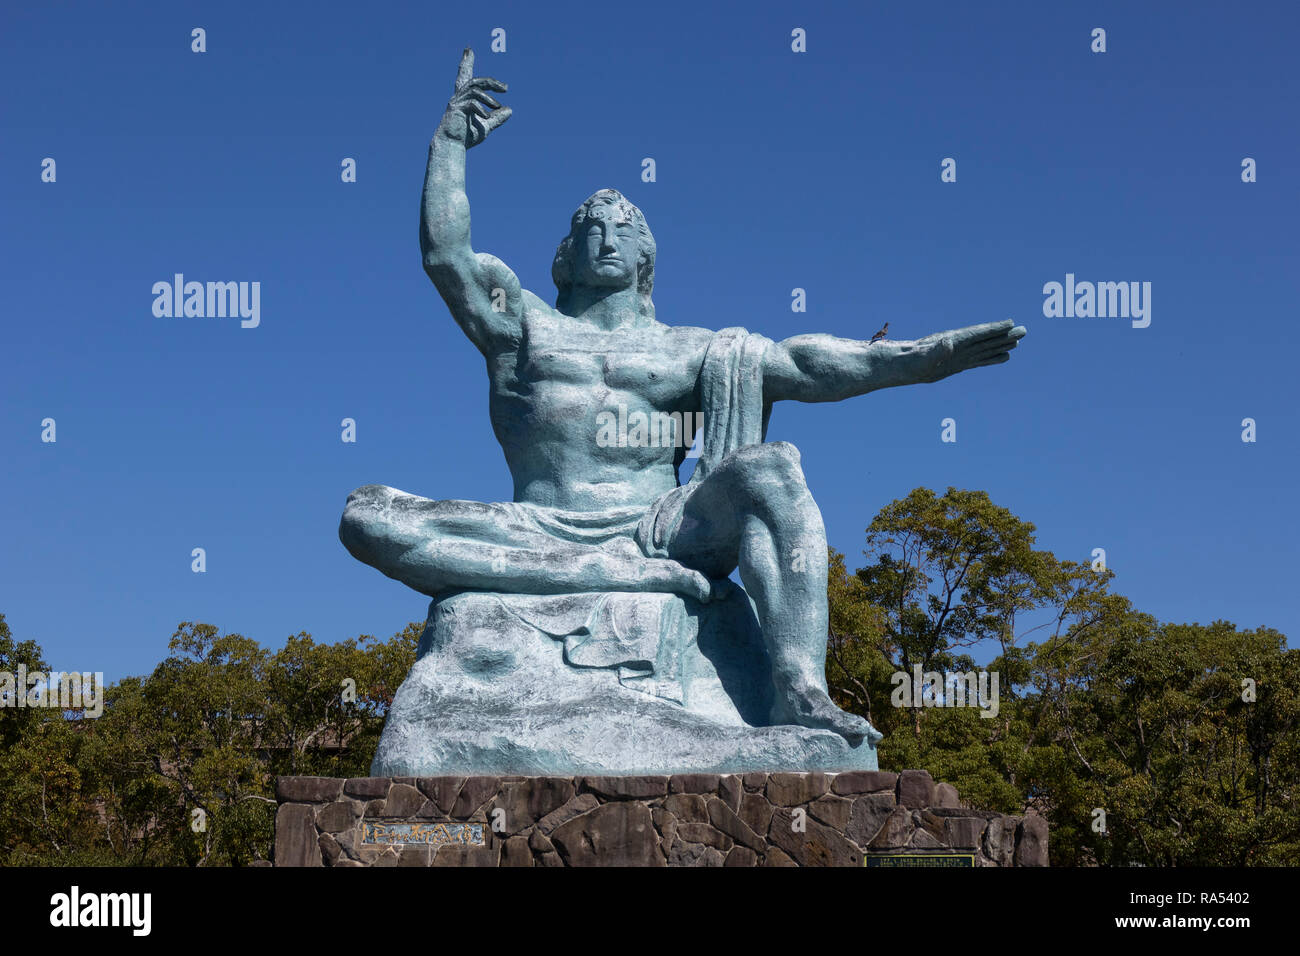 Nagasaki, Giappone - 25 Ottobre 2018: Nagasaki statua della Pace da Seibo Kitamura a Nagasaki il Parco della Pace a Nagasaki, in Giappone Foto Stock